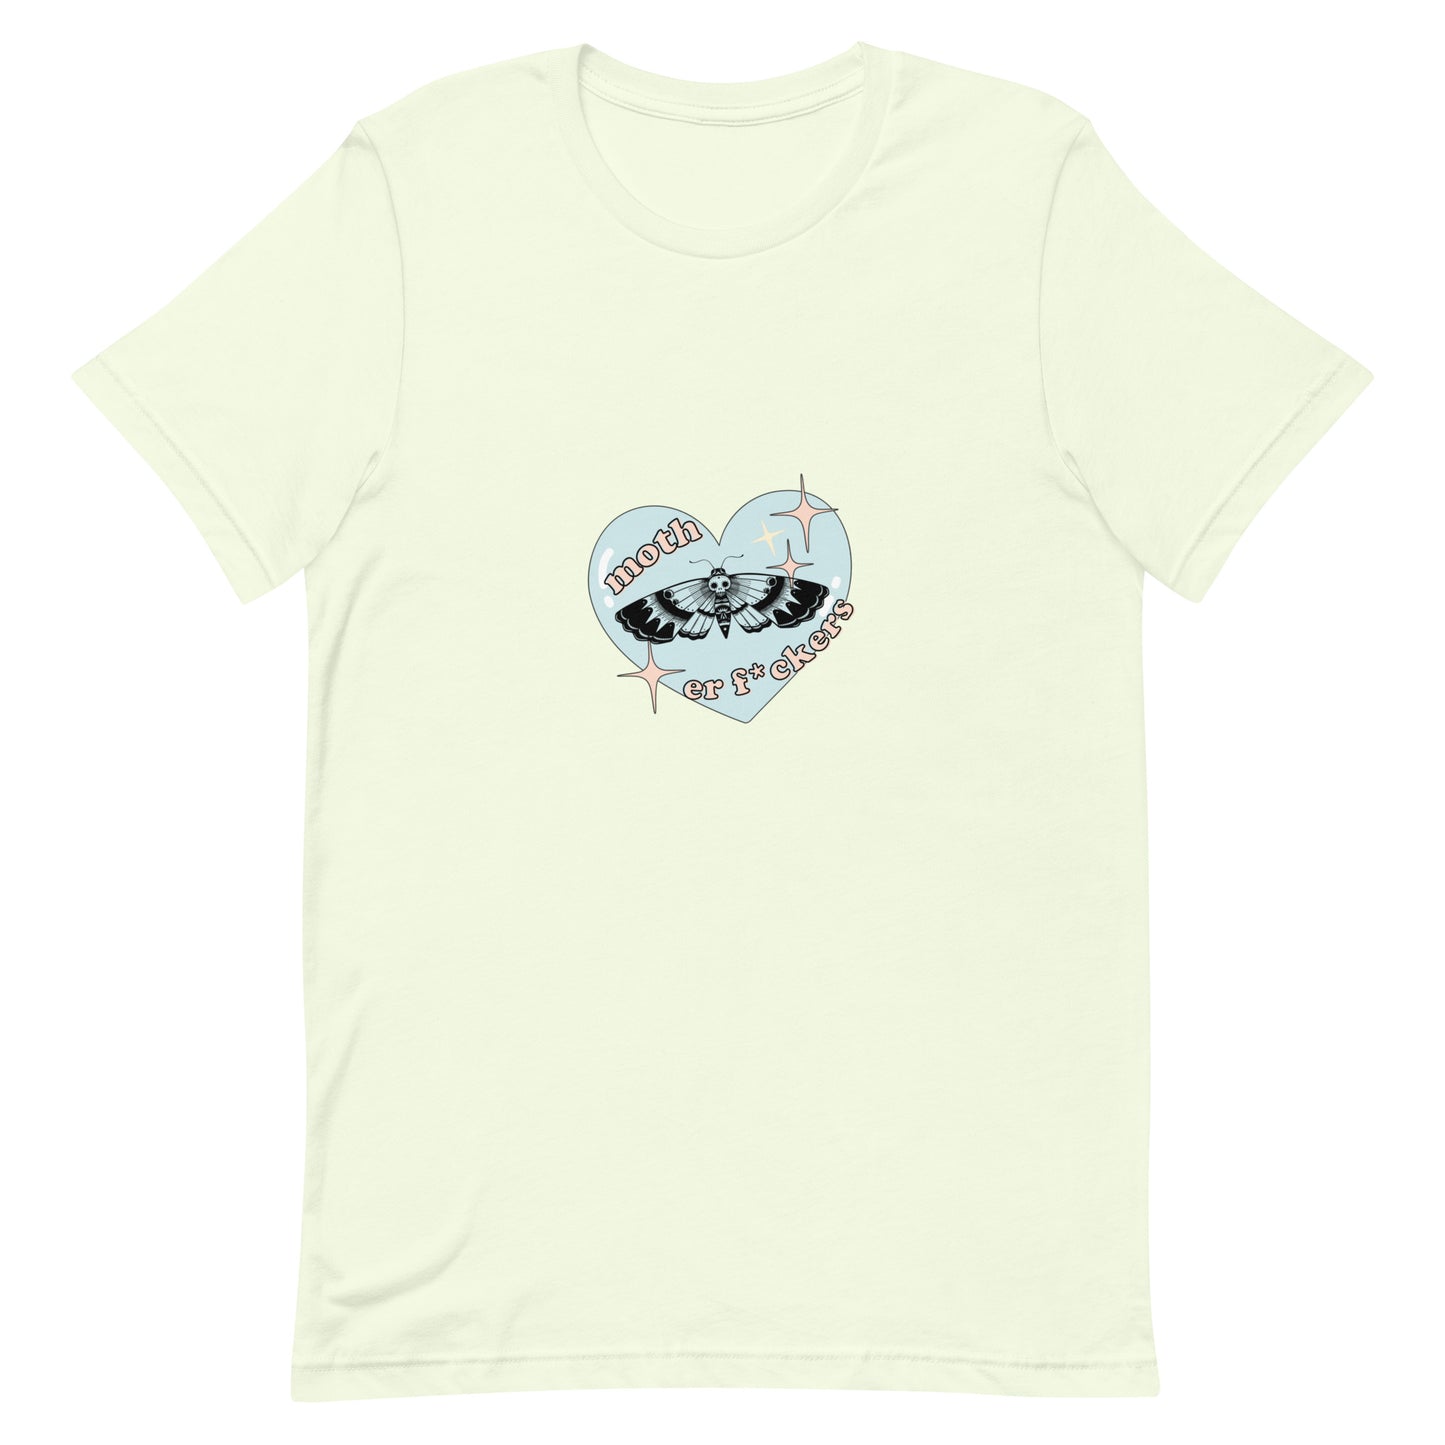 Moth-er F*cker t-shirt